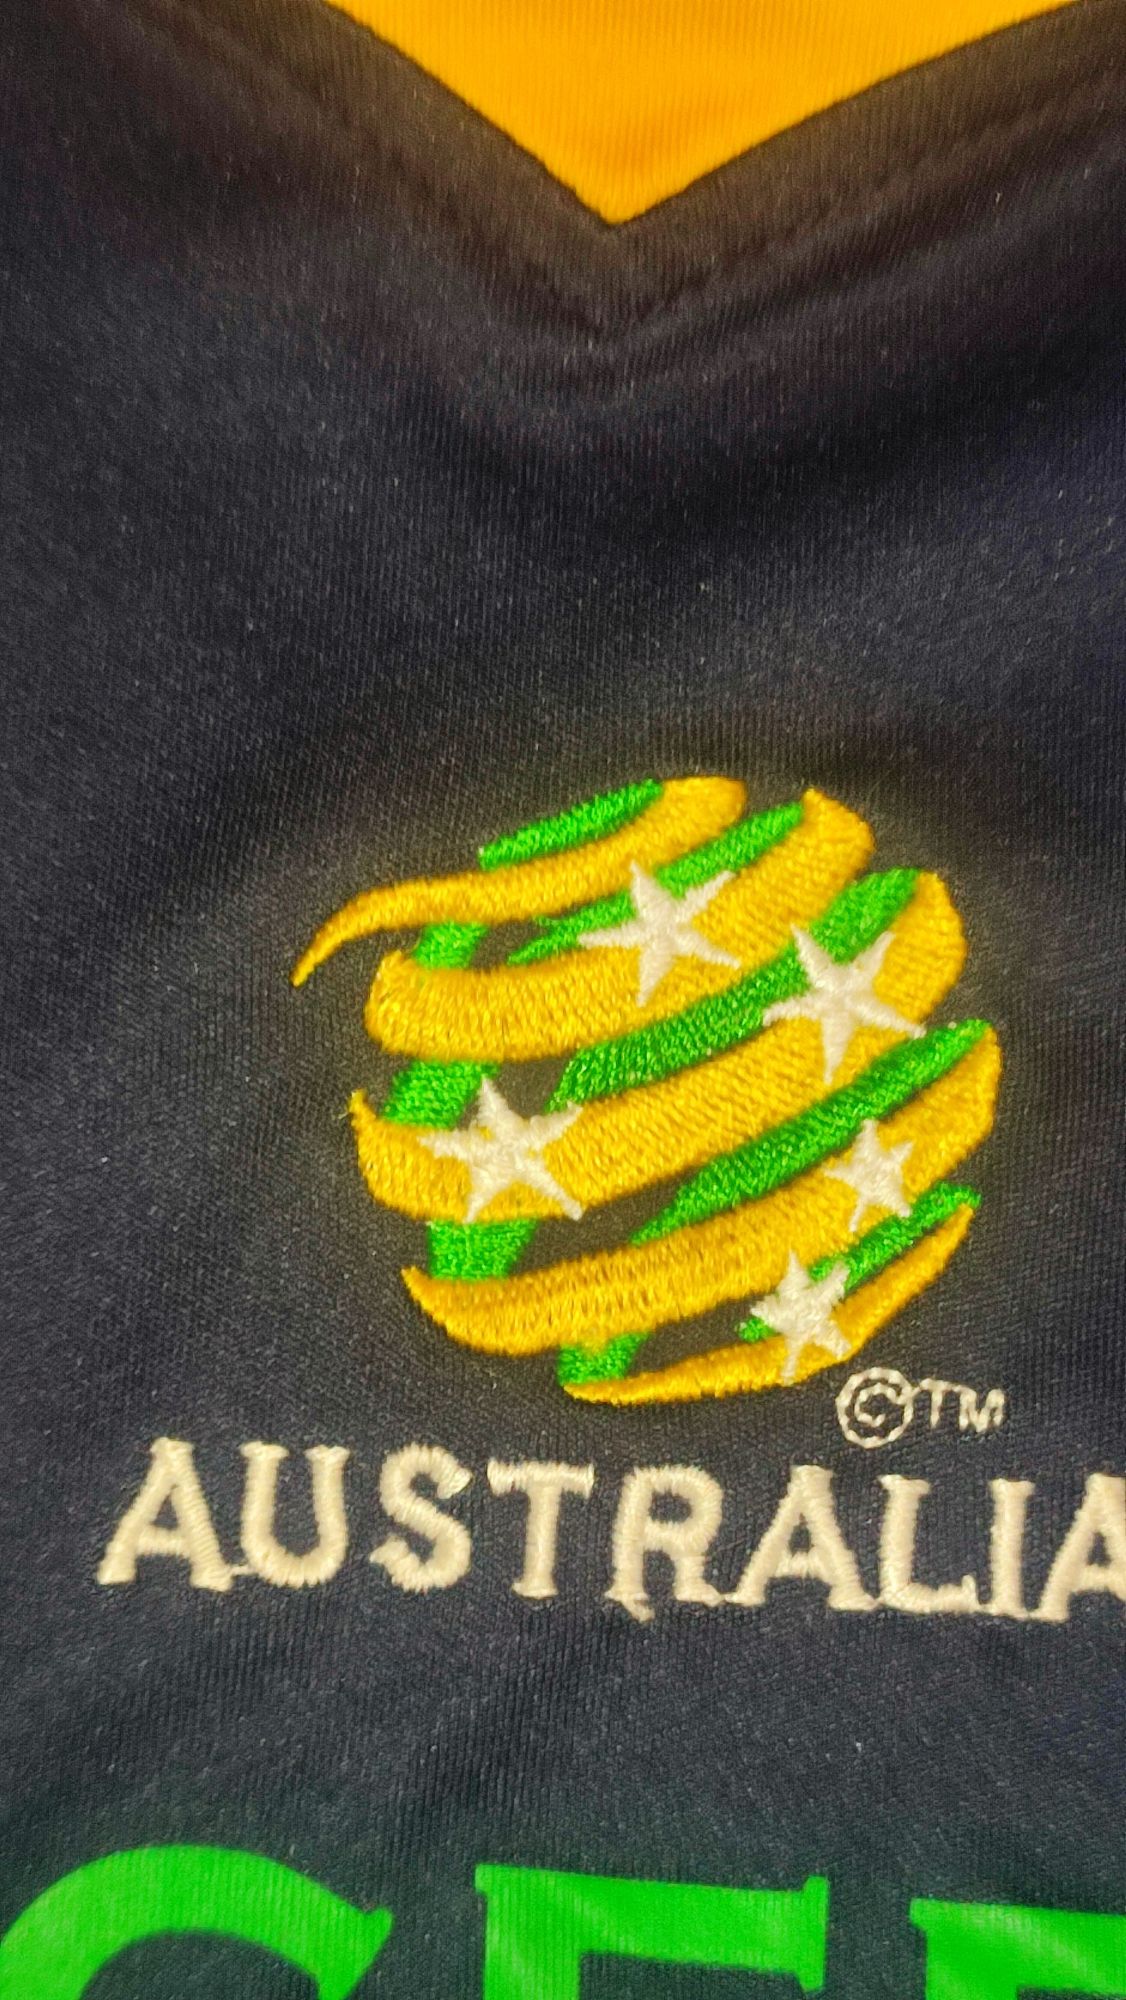 Koszulka sportowa Australia rozm 140-152 wymiary na fotkach